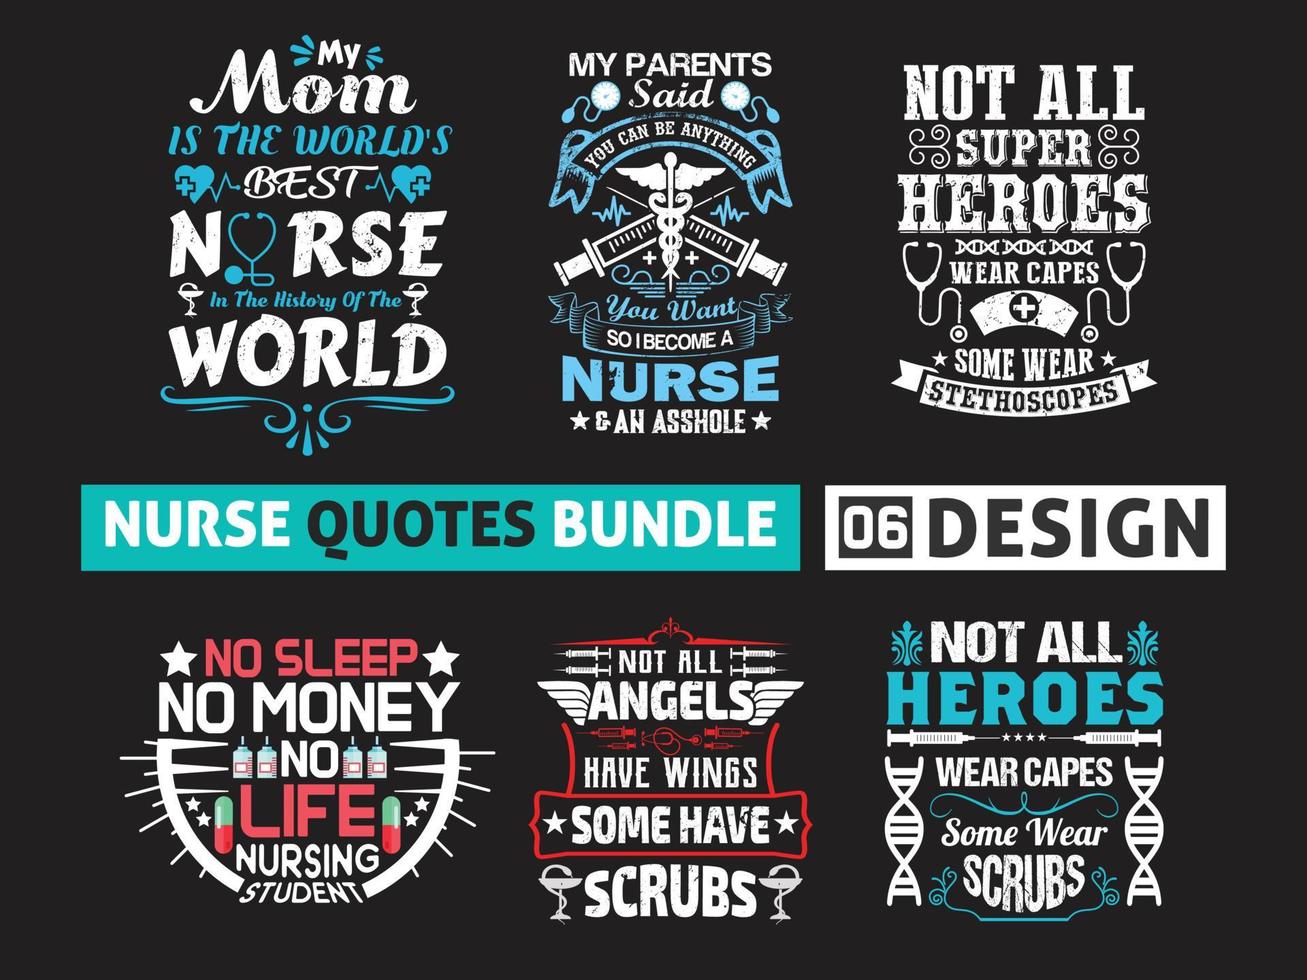 ensemble d'emblèmes de conception de citations de soins infirmiers. vecteur